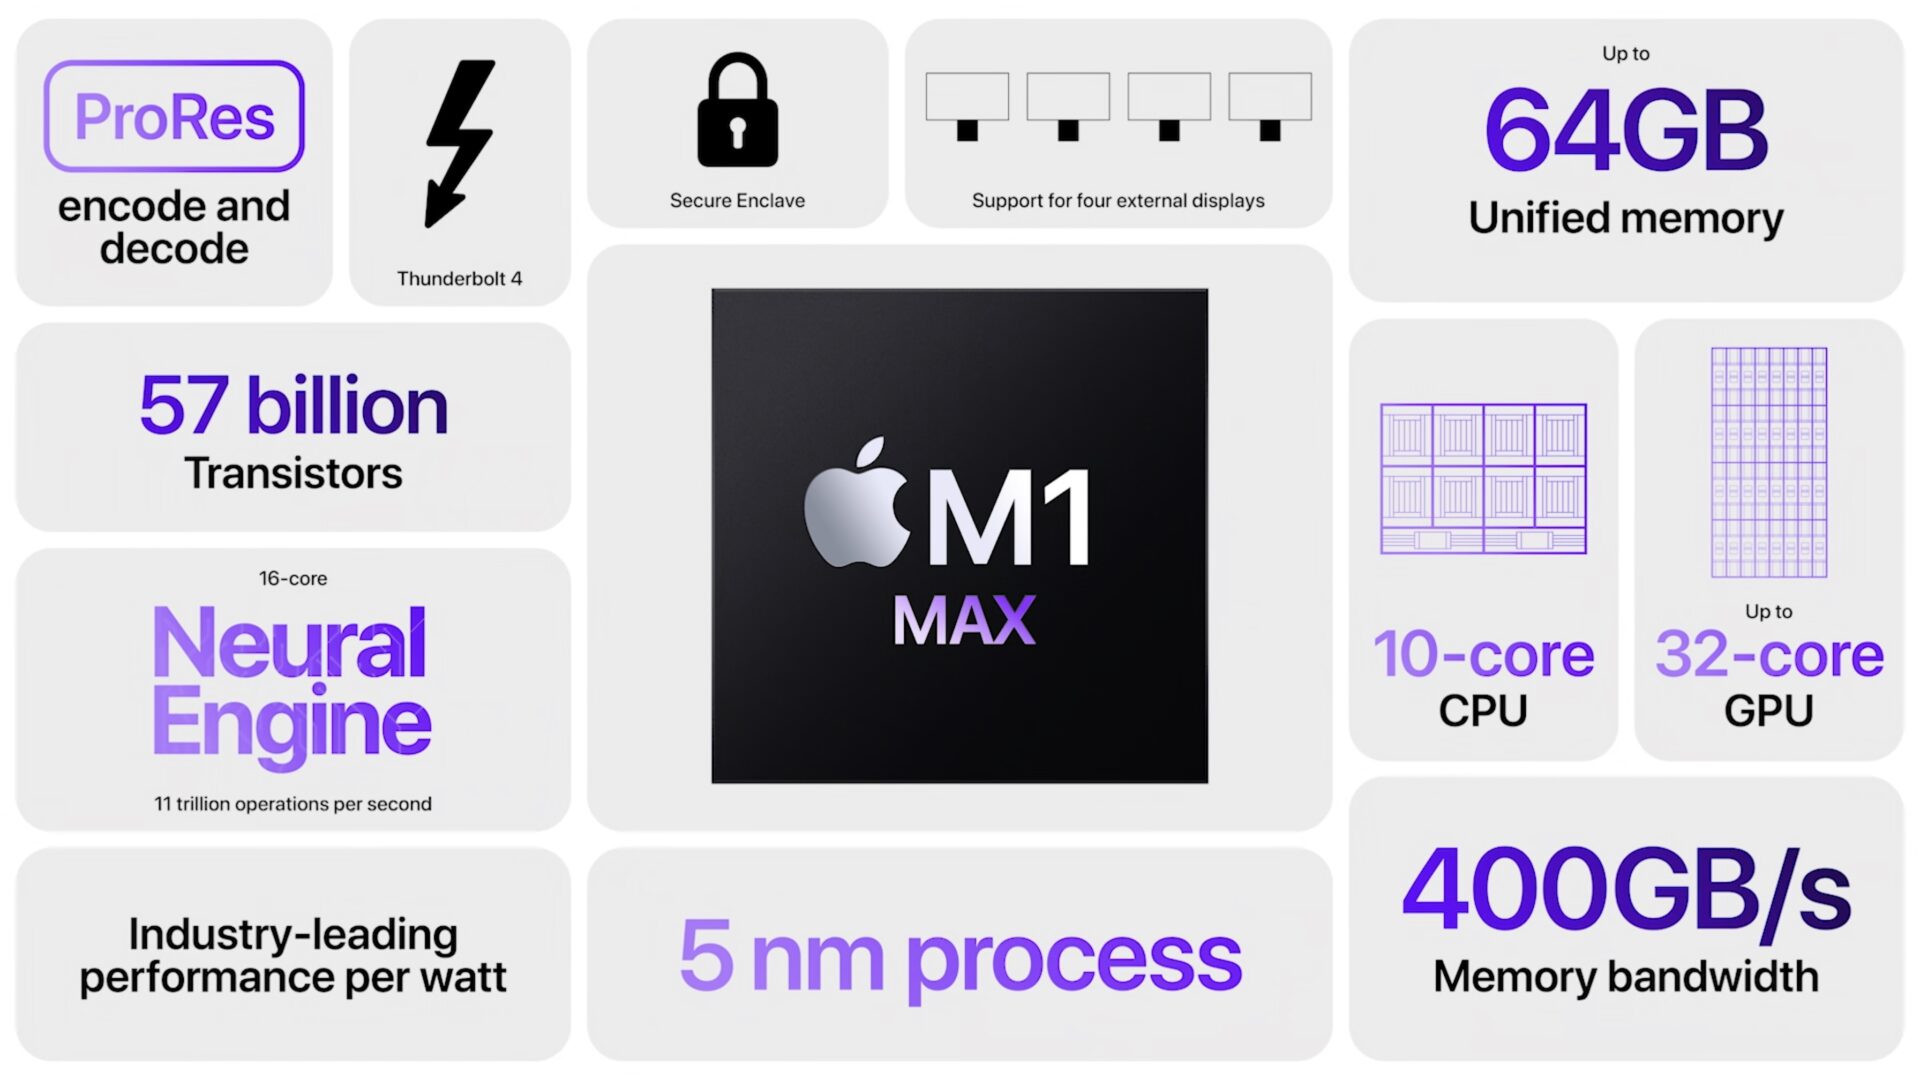 Lộ hiệu năng chip Apple M1 Max mạnh ngang ngửa AMD RX 6800M và Nvidia RTX 3080 mobile